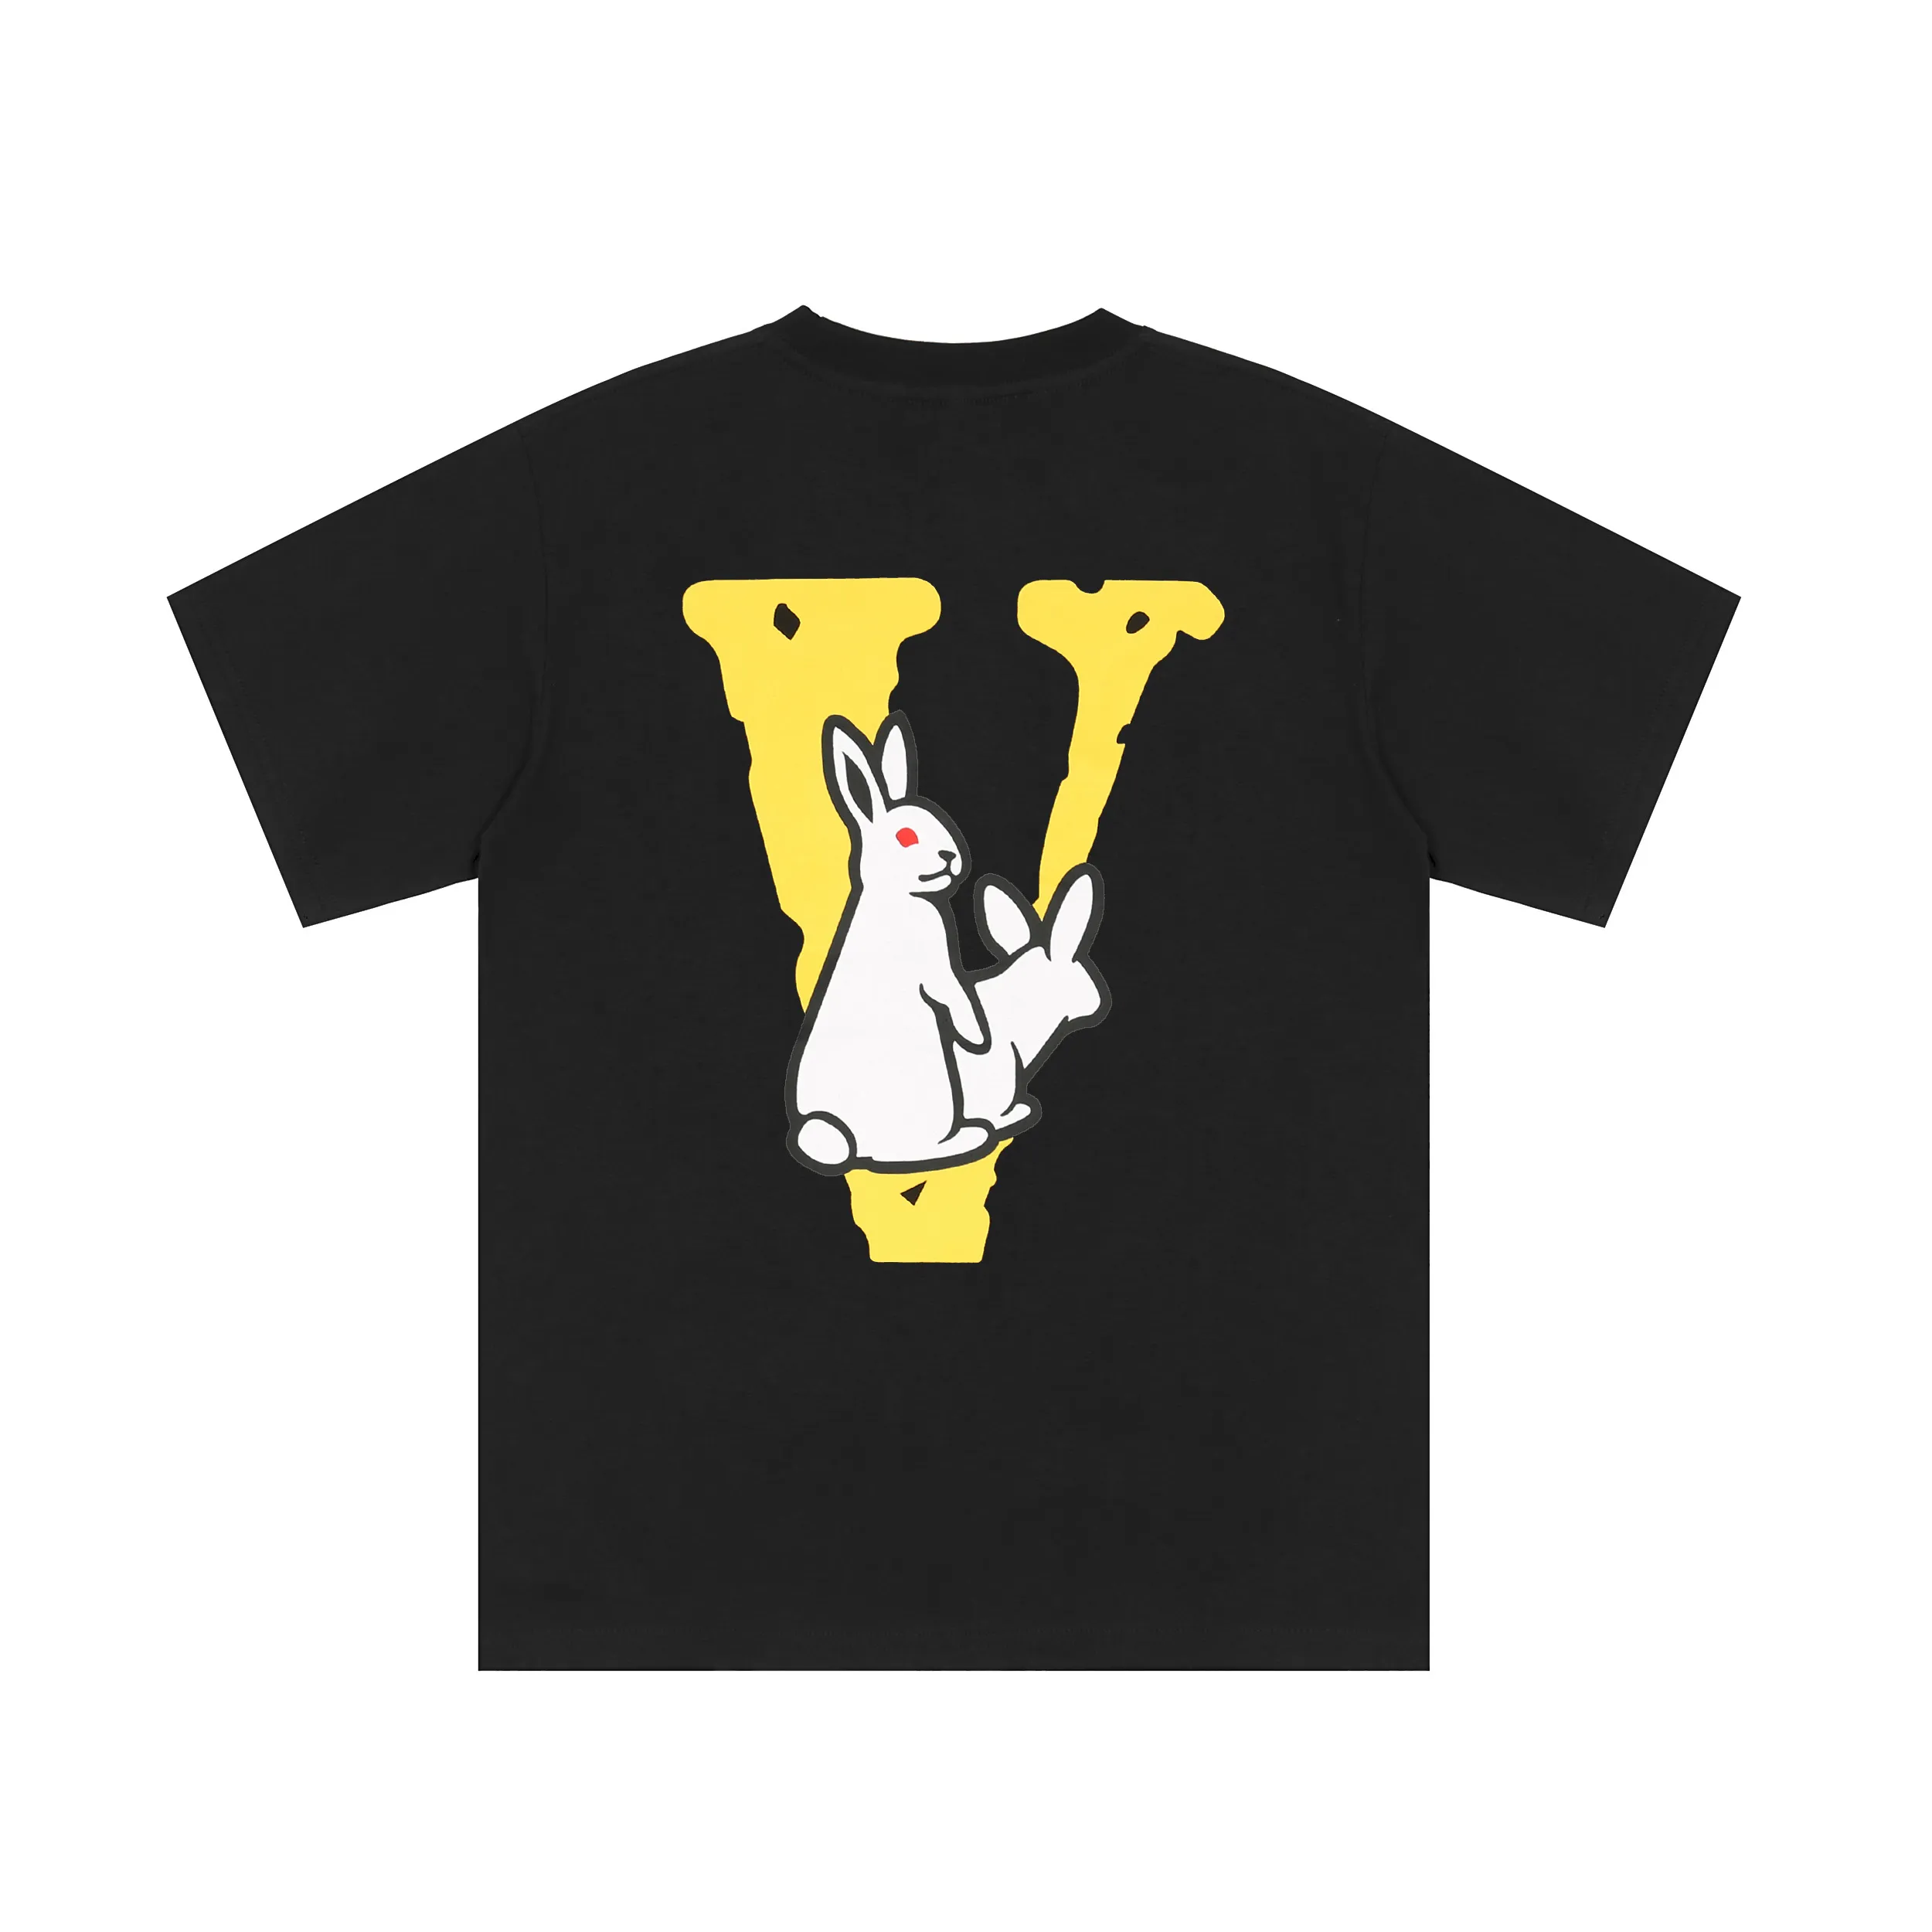 VLONE T-shirt Grande "V" Maglietta da uomo / da donna Coppie Casual Tendenza moda High Street Allentata HIP-HOP Camicia girocollo stampata in cotone 100% TAGLIA USA S-XL 61371